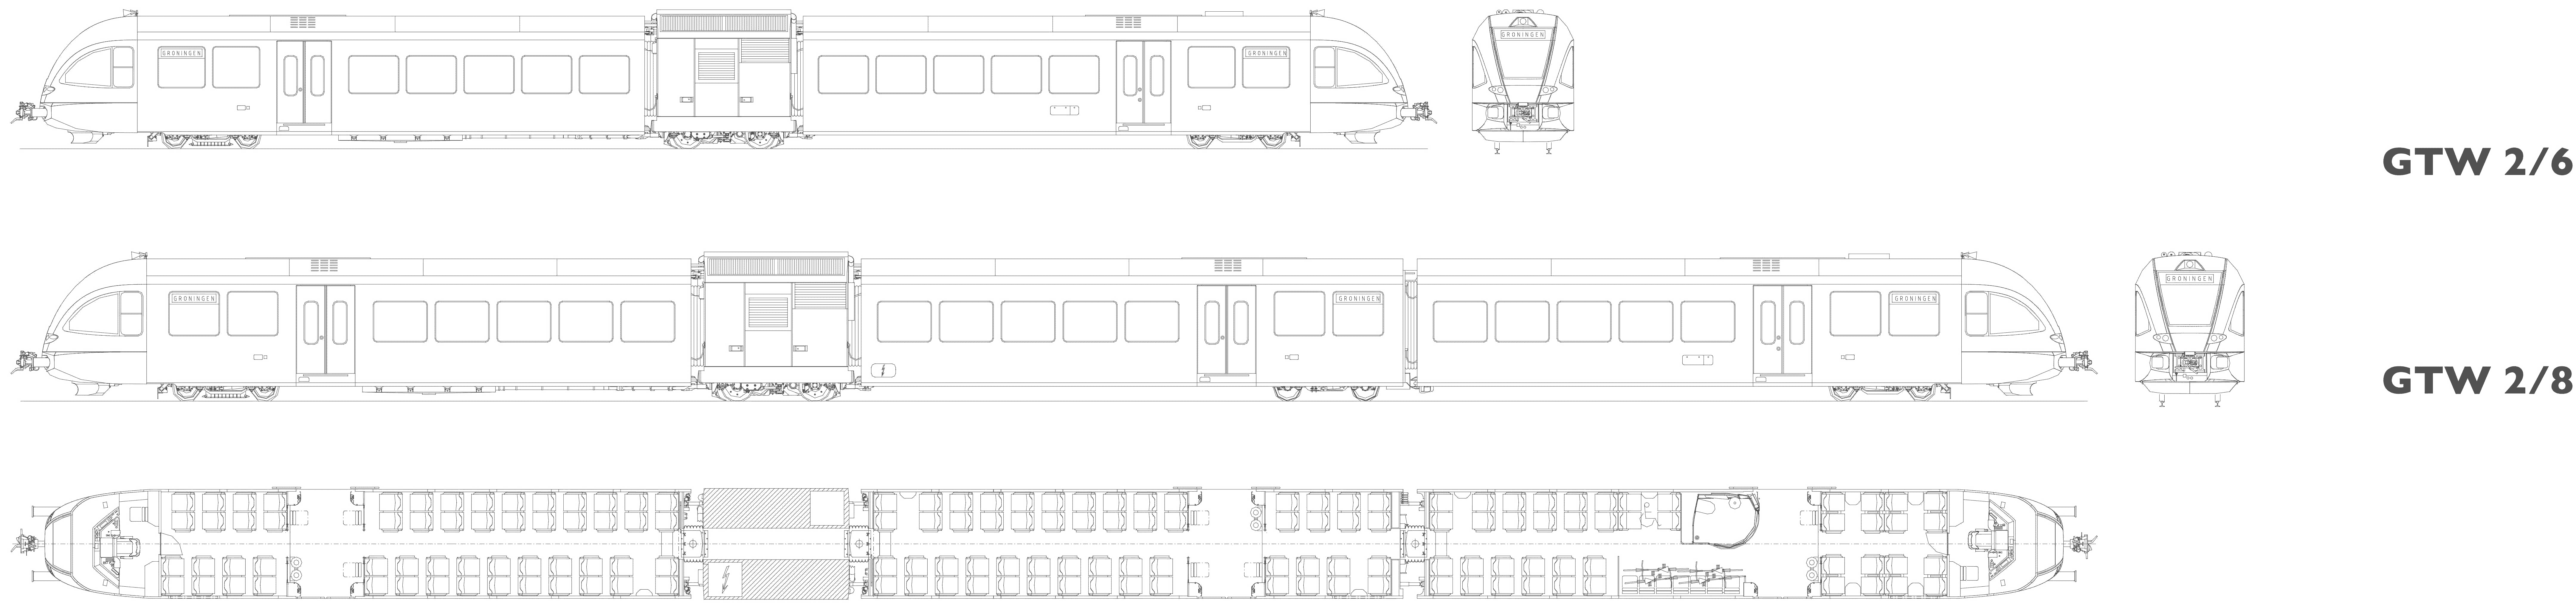 Stadler GTW blueprint